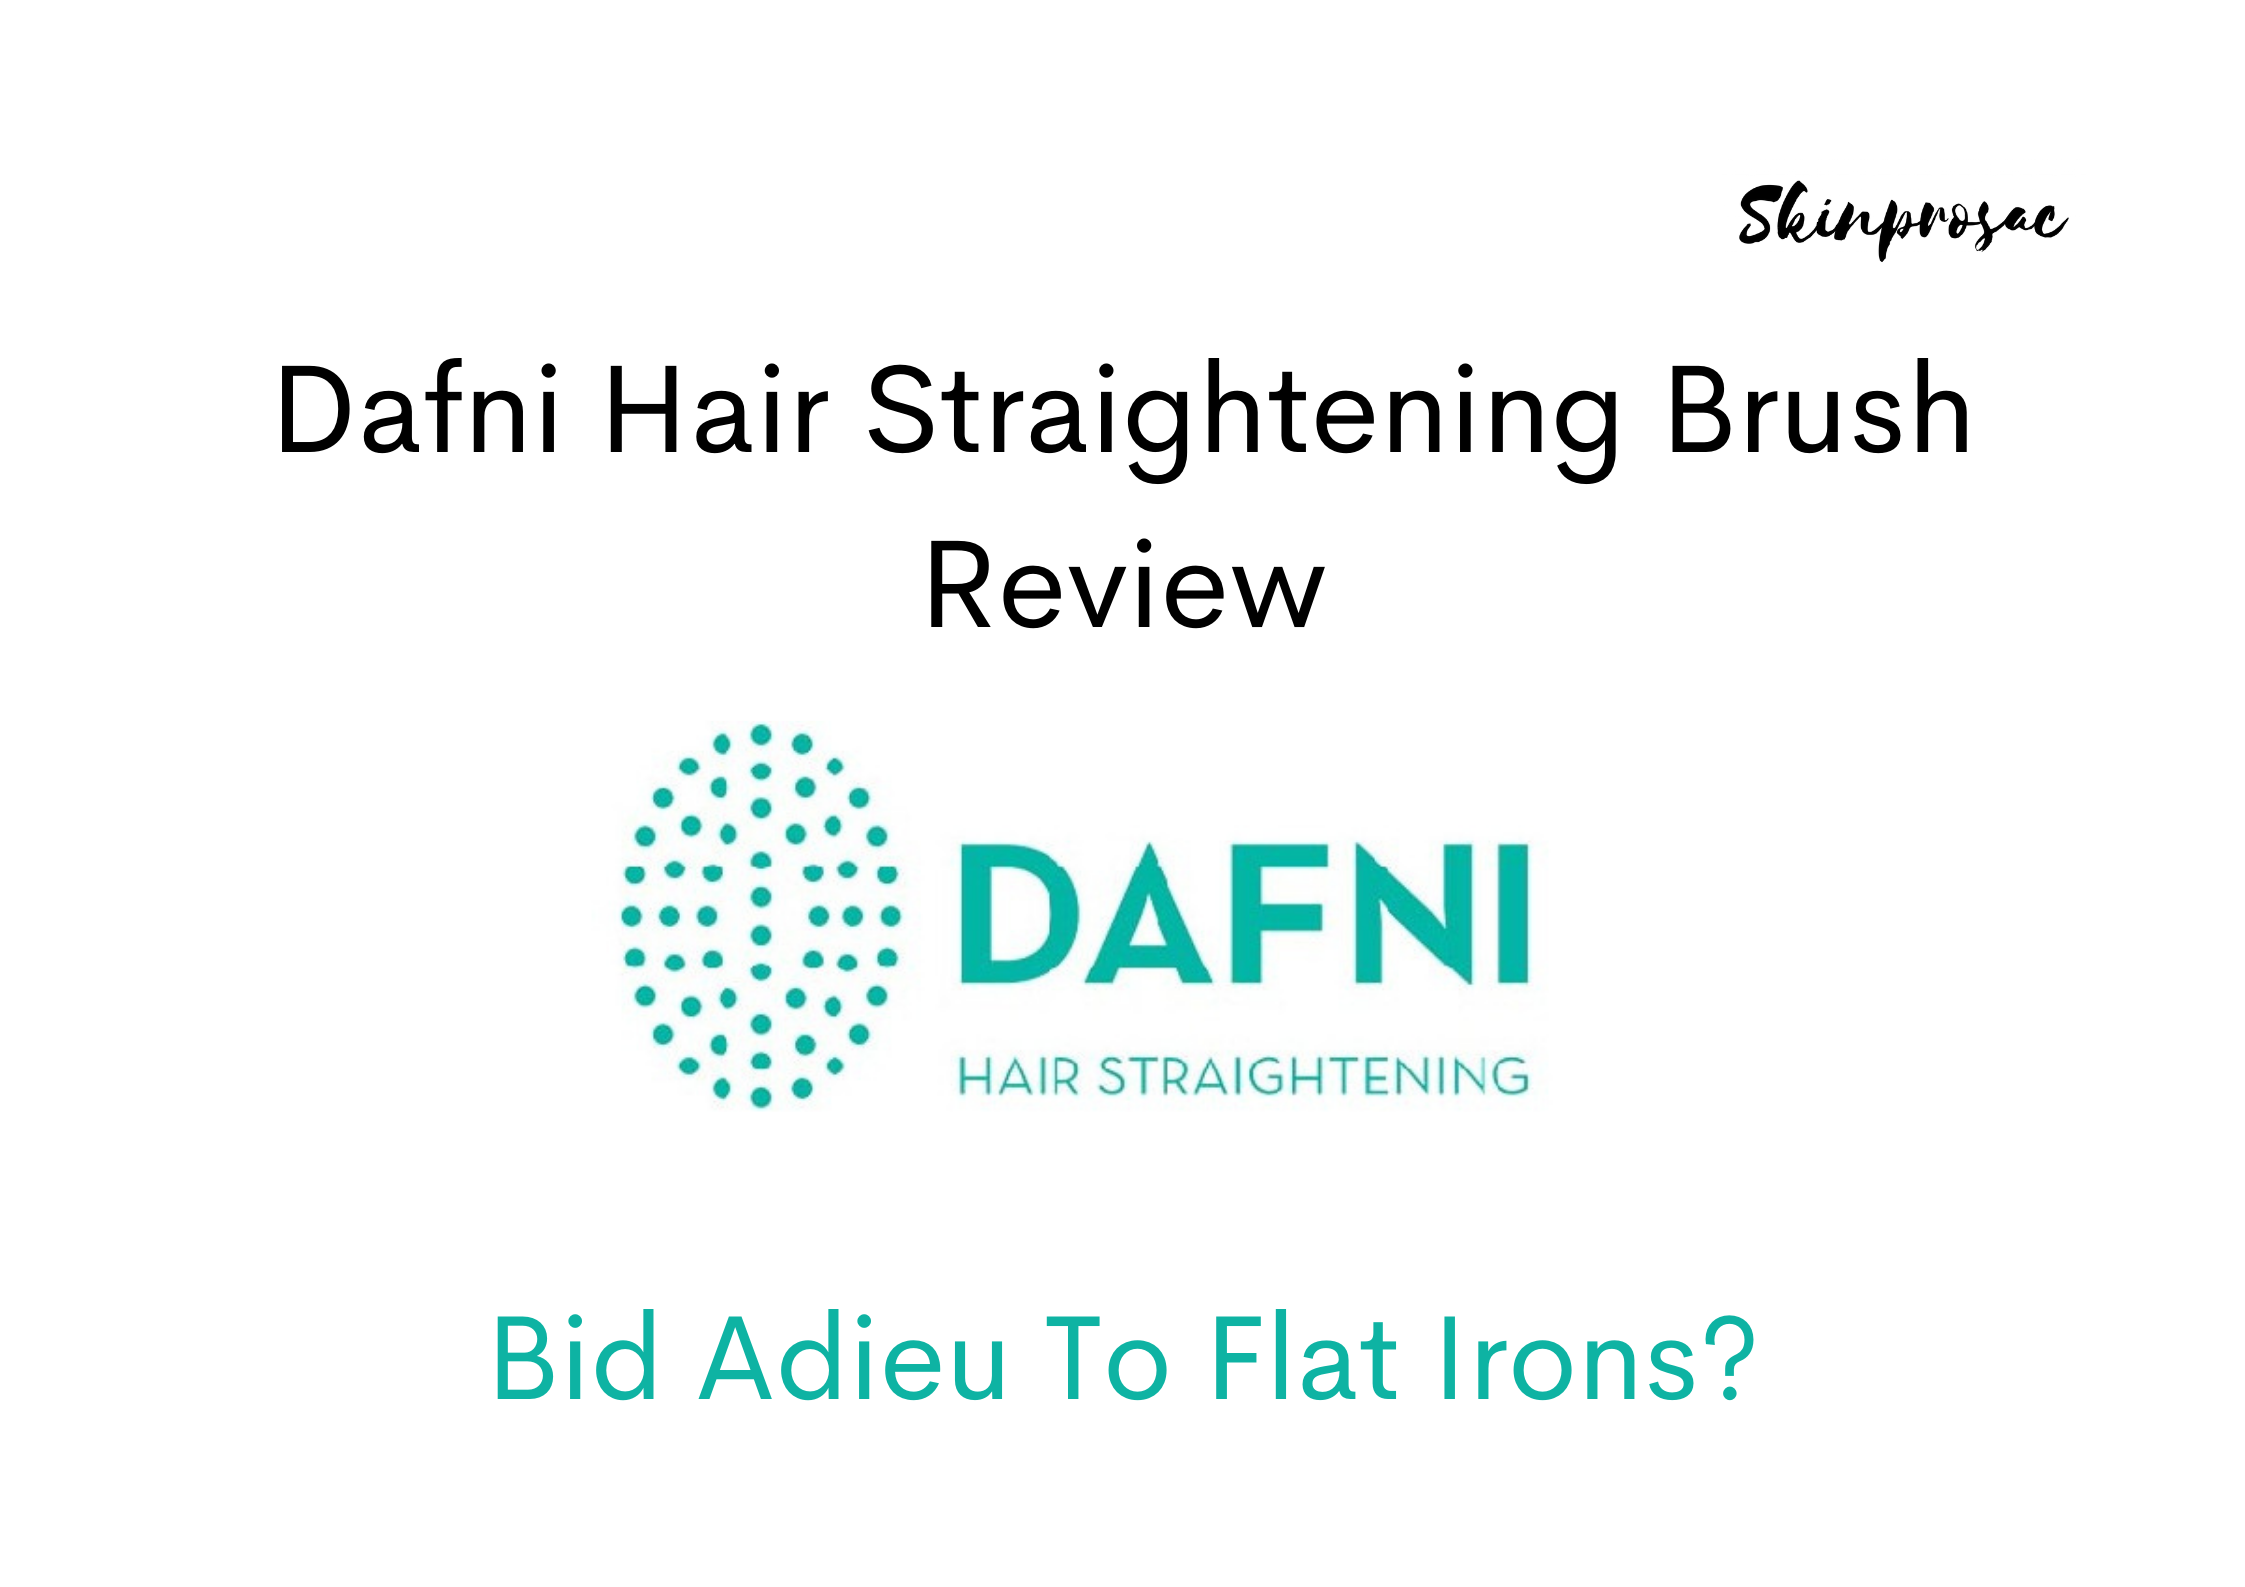 Dafni Hair Straightening Brush Reviews